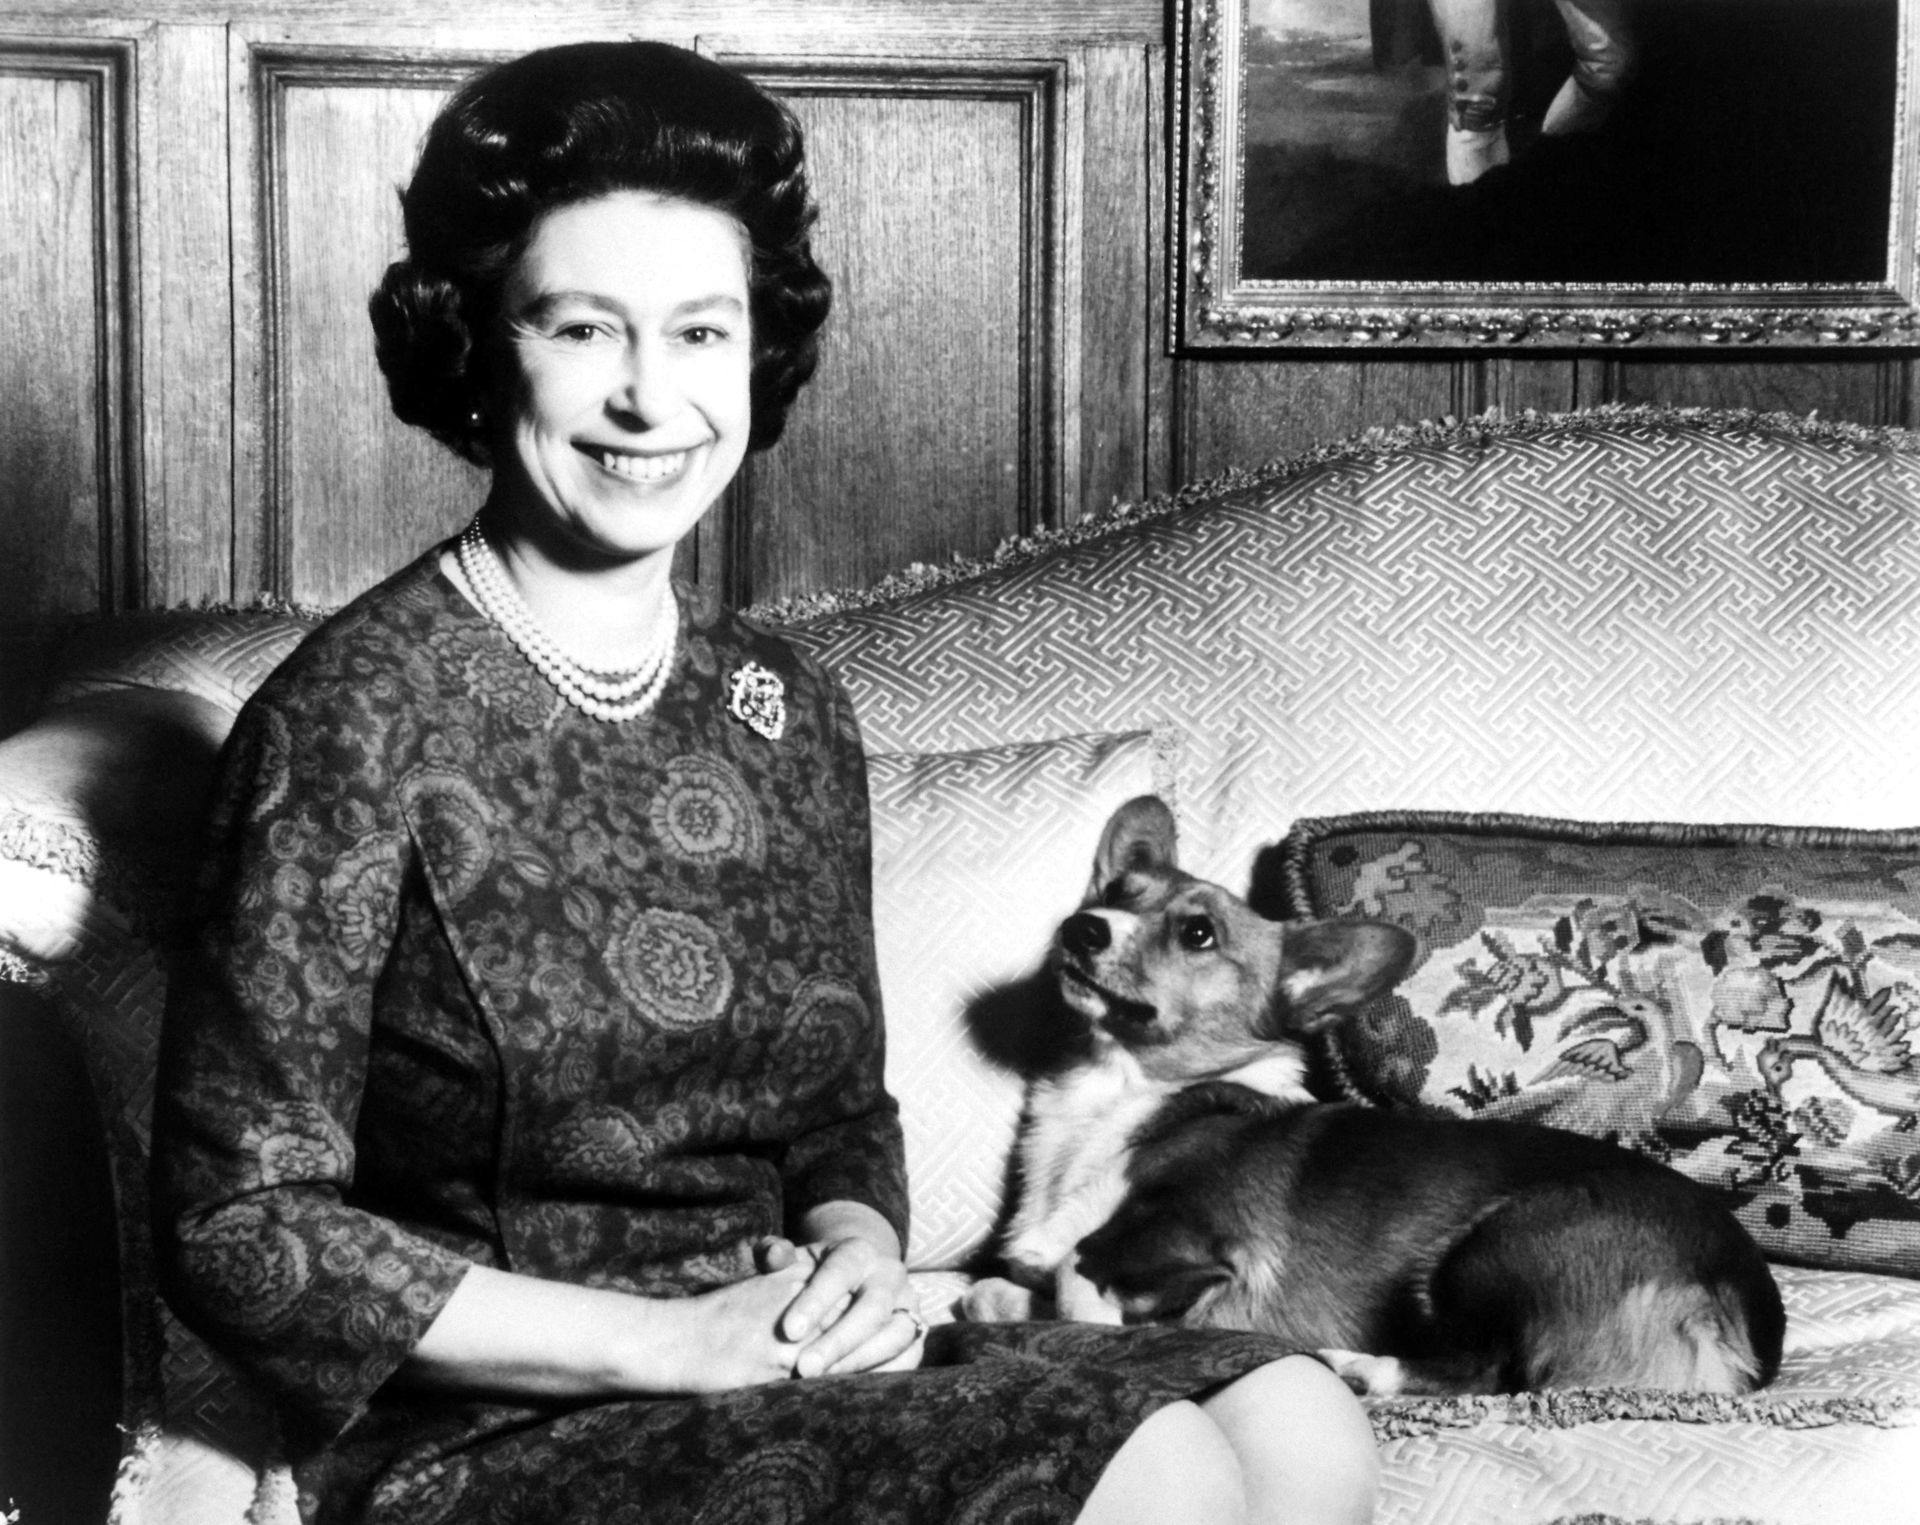 Dronningen i februar 1970 sammen med én af sine hunde.
